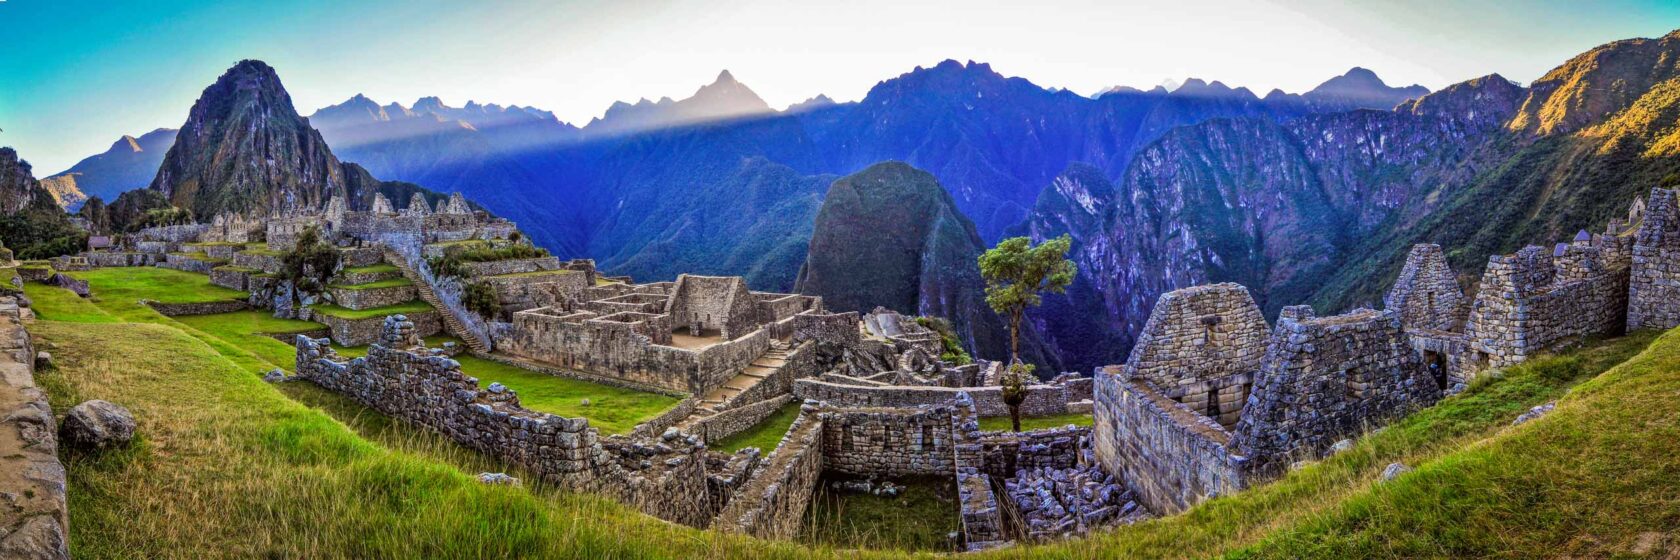 Machu Picchu ruins.